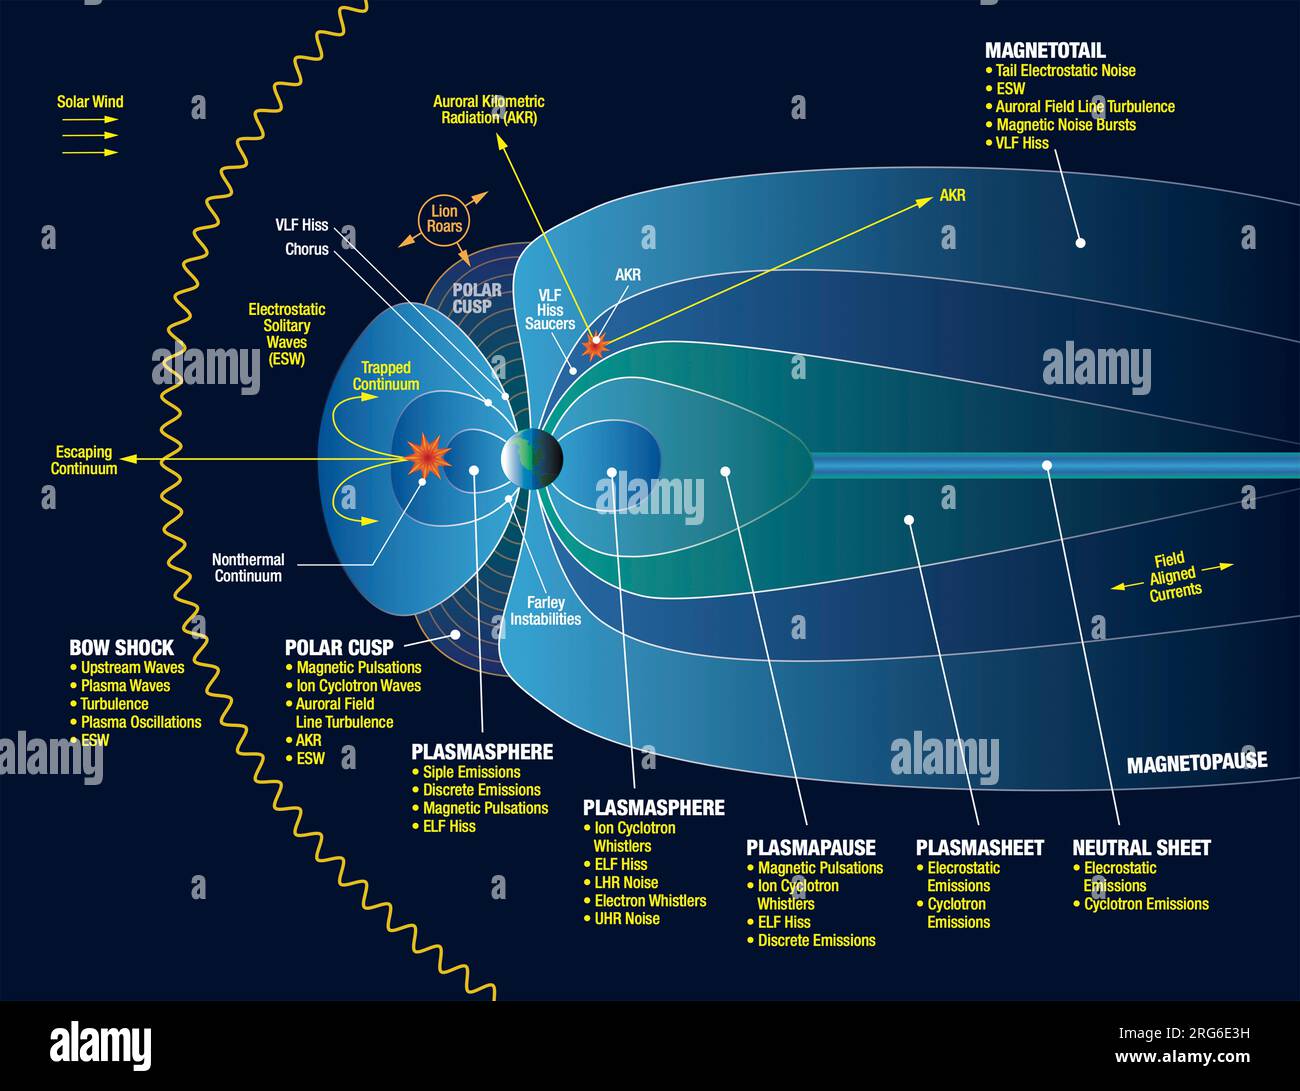 Visualizzazione scientifica di vari tipi di onde plasmatiche presenti nella magnetosfera. Foto Stock